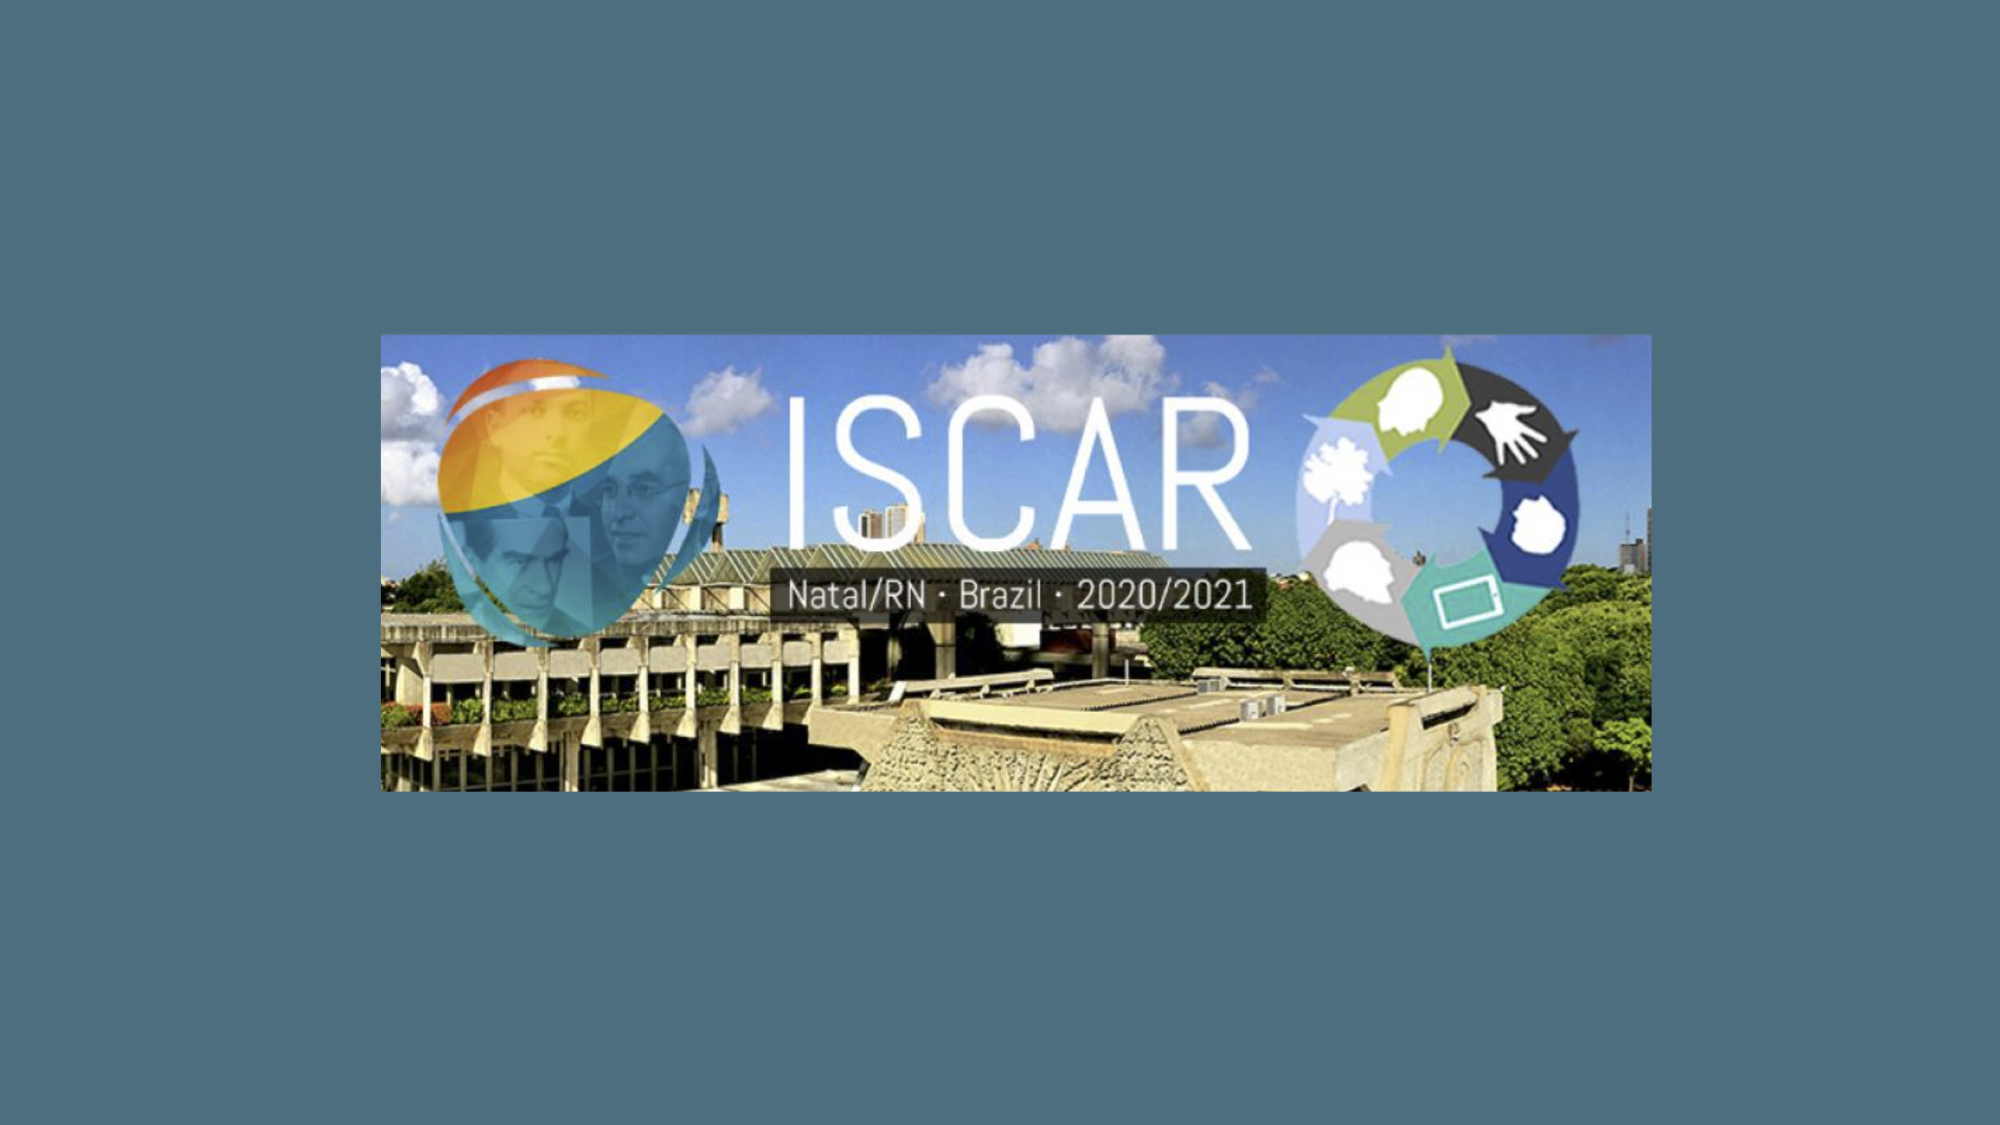 6-й Конгресс ISCAR 2020/2021: информационный бюллетень и программа участия МГППУ